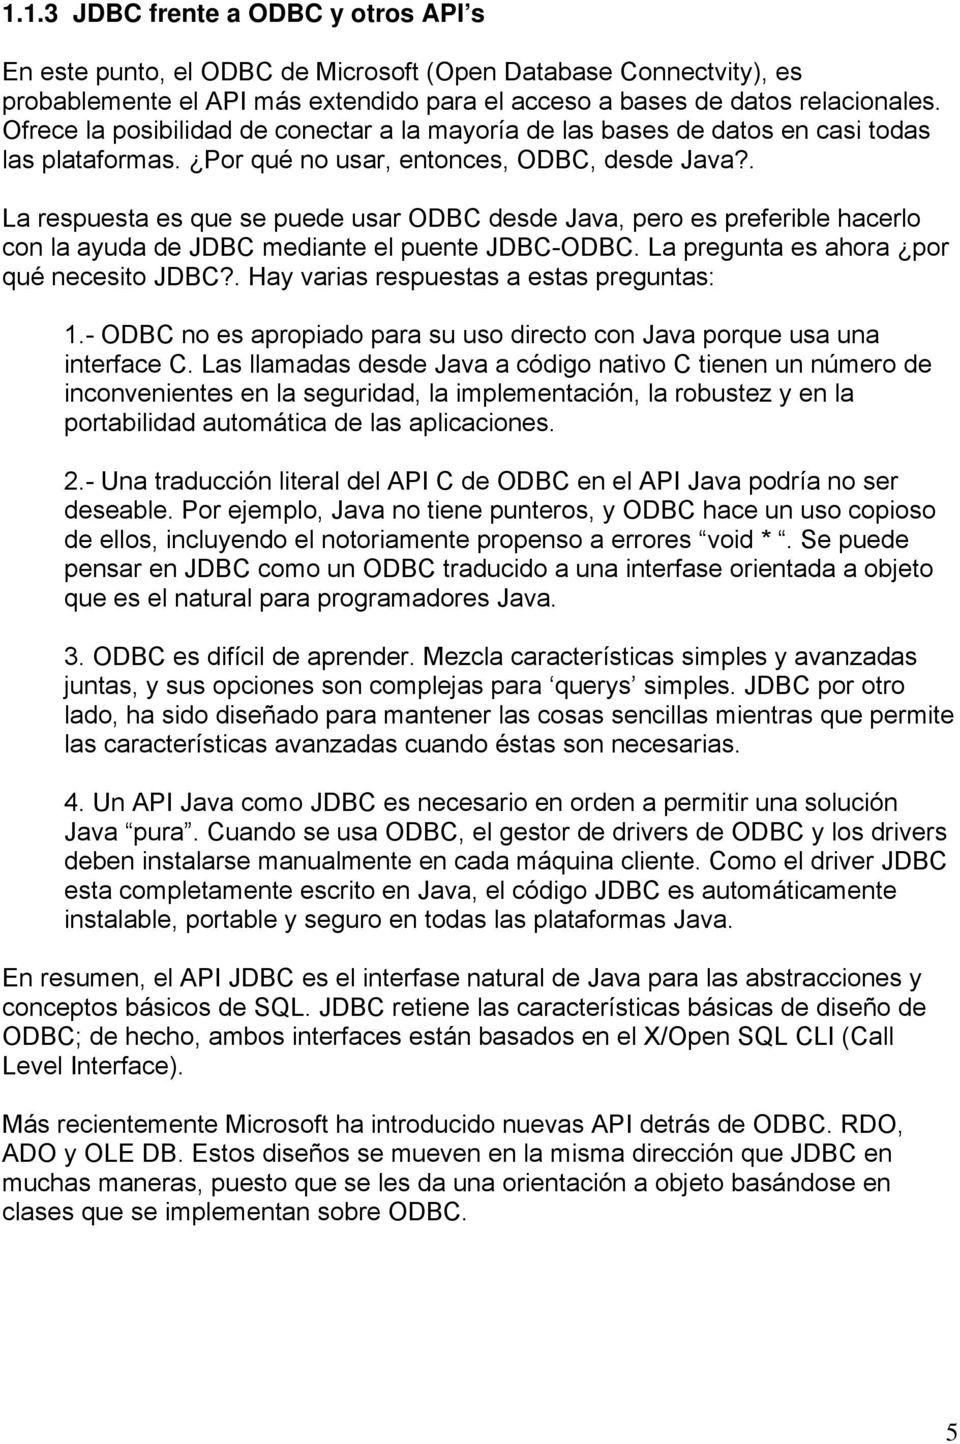 . La respuesta es que se puede usar ODBC desde Java, pero es preferible hacerlo con la ayuda de JDBC mediante el puente JDBC-ODBC. La pregunta es ahora por qué necesito JDBC?